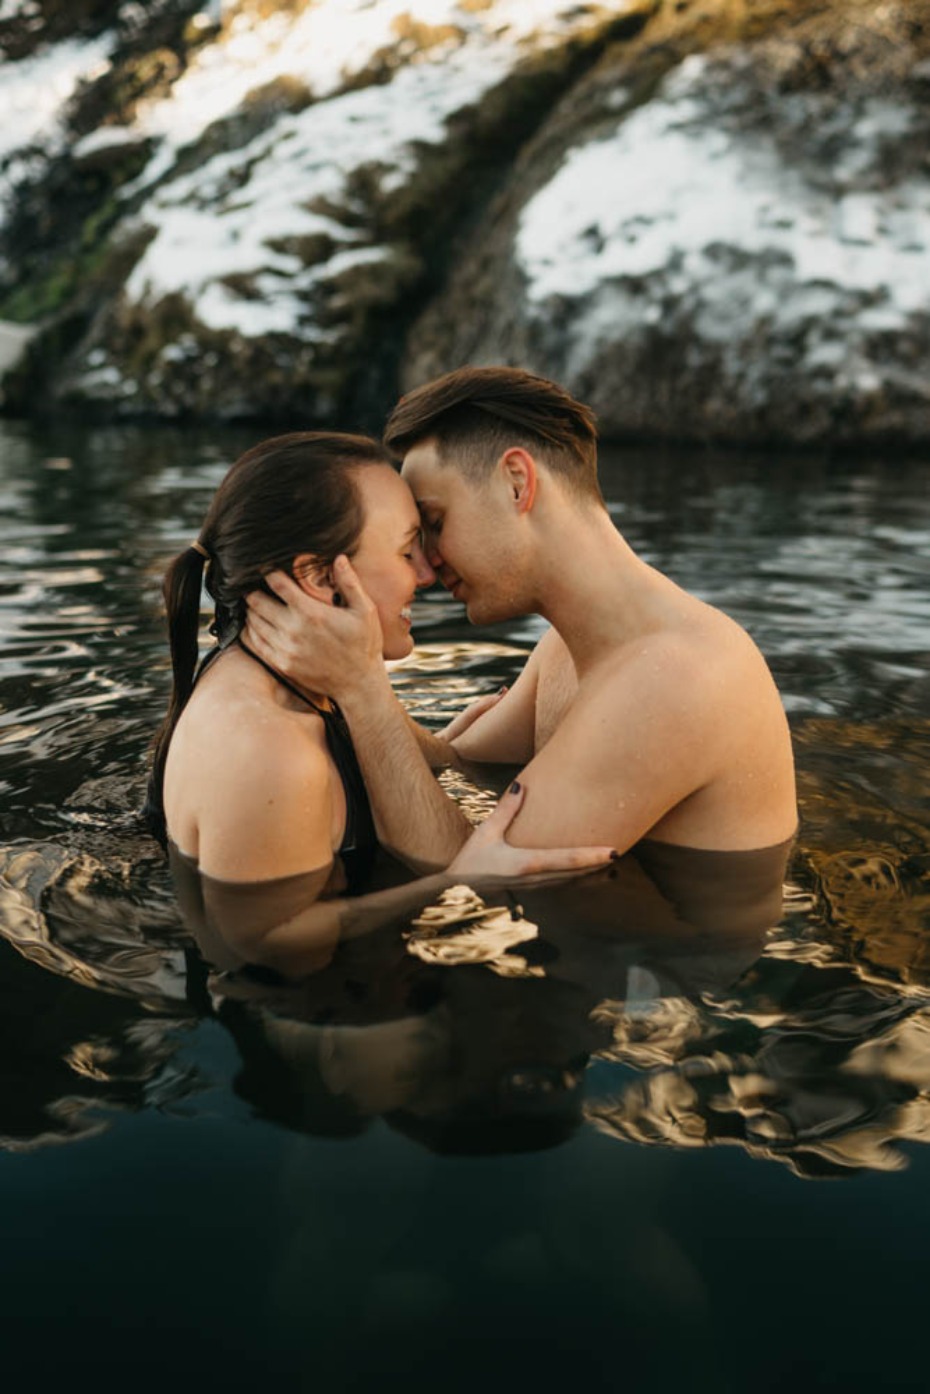 Hot spring swim in Iceland